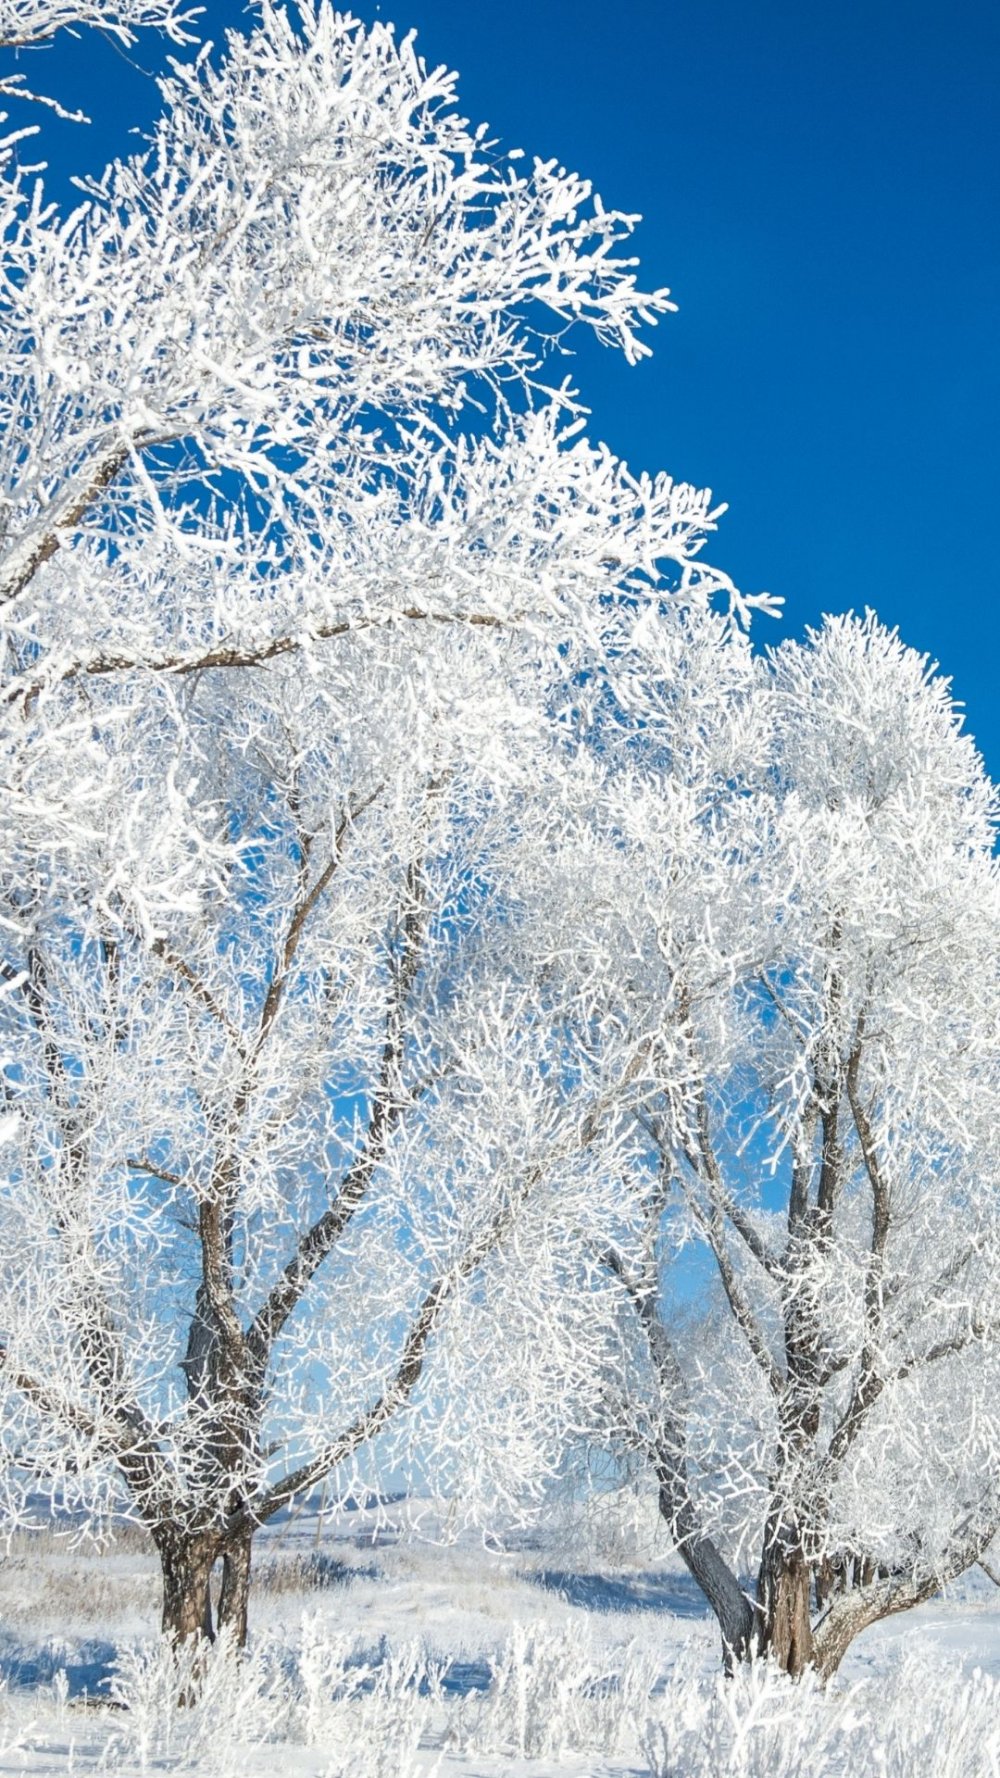 Aralık Ayına Özel Sosyal Medya Postları: Kışın Büyülü Dünyası